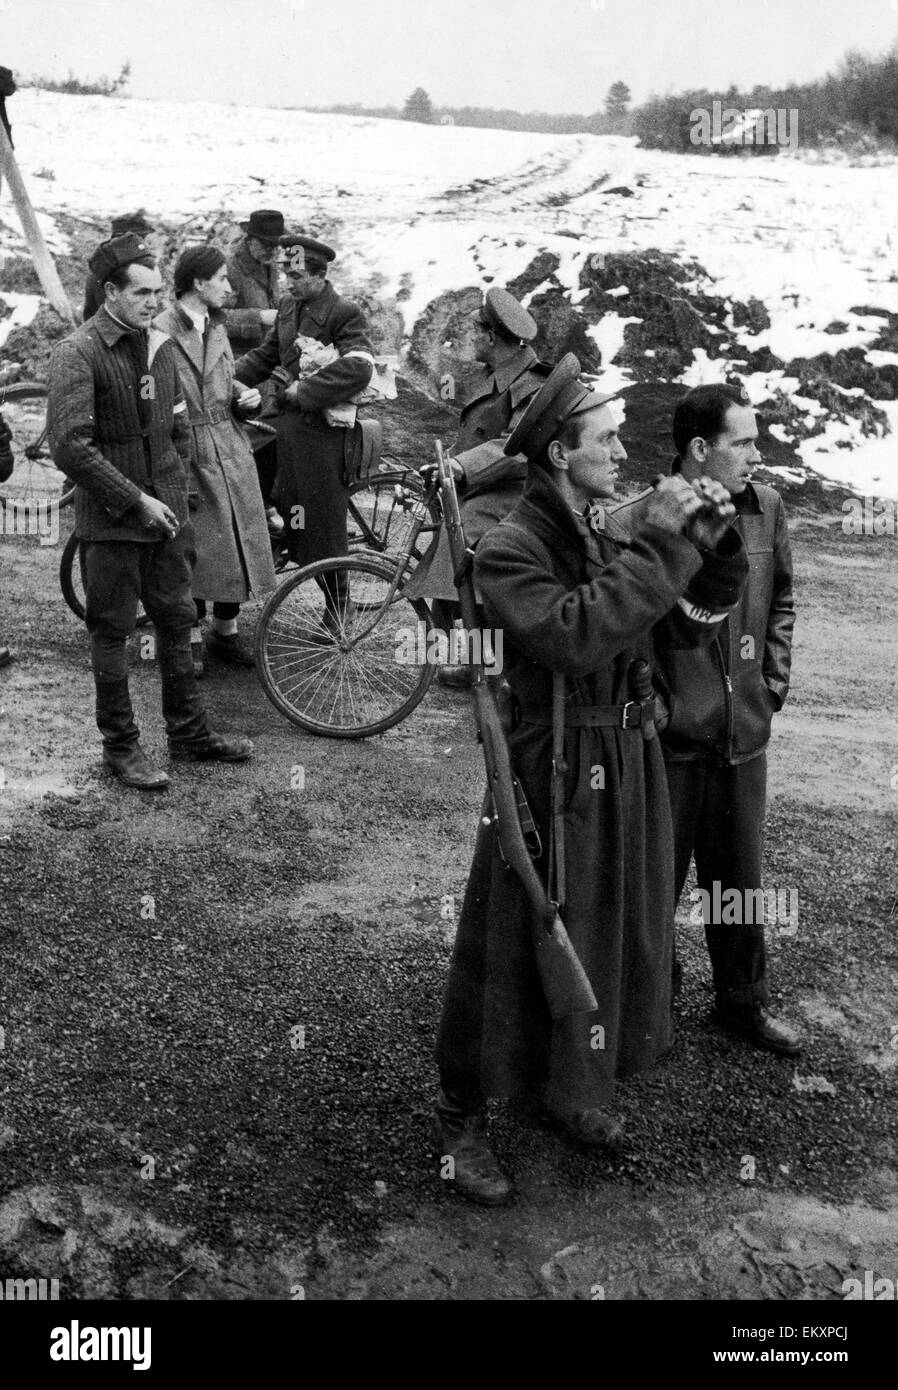 Ungarischen Aufstand 1956. Freiheitskämpfer sammeln an der österreichischen Grenze, nach der sowjetischen Invasion am 4. November. Die letzte Tasche des Widerstands zu Waffenstillstand aufgerufen am 10. November. Das Ergebnis der sowjetischen Invasion war 2.500 Ungarn und 722 sowjetischen Stockfoto